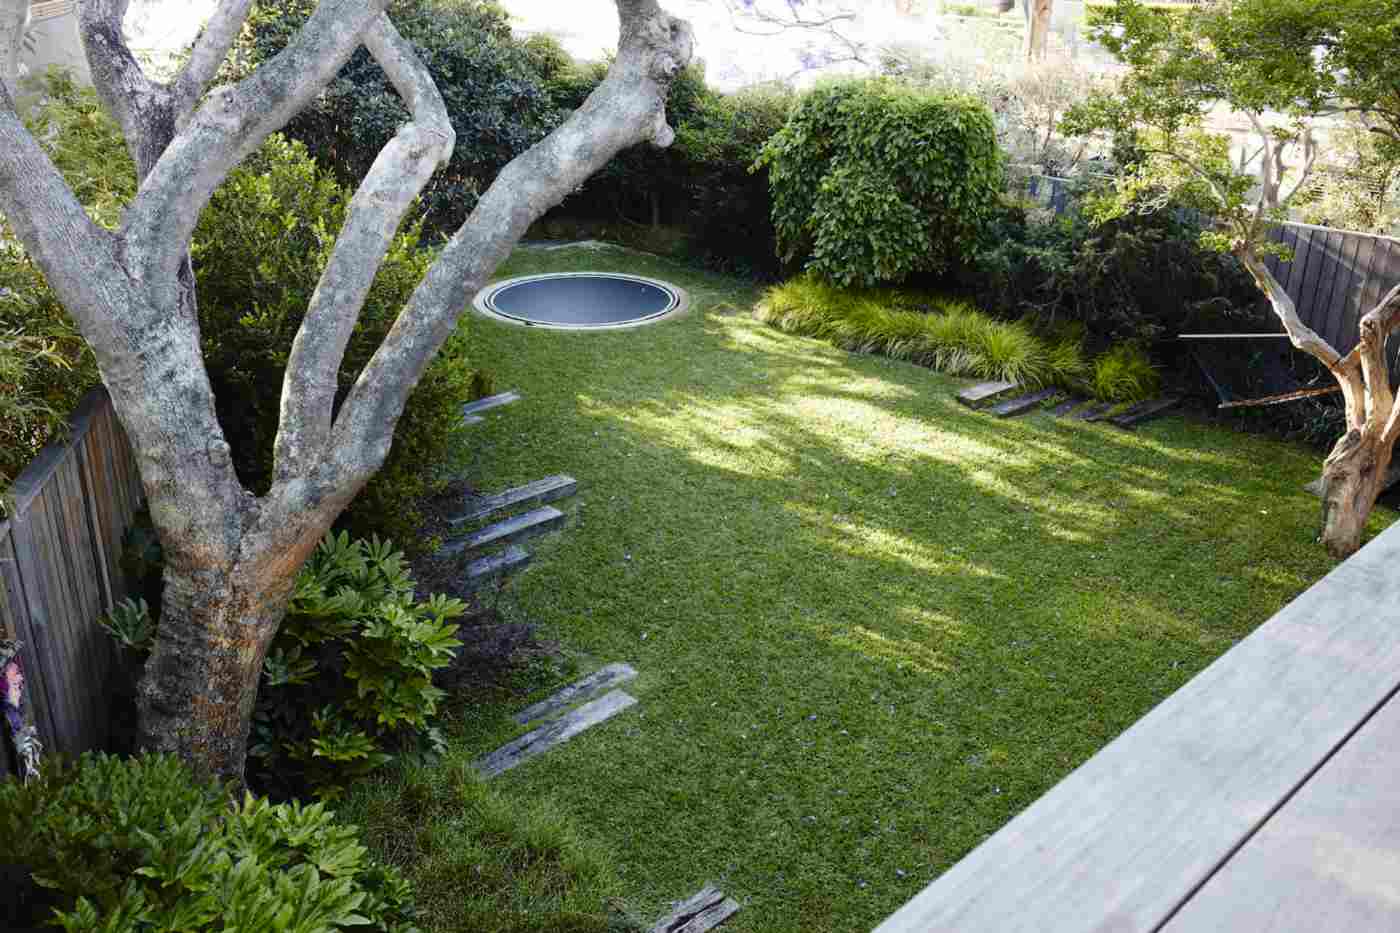 Bodentrampolin im Garten Ecke Bäume Landschaftsbau modern